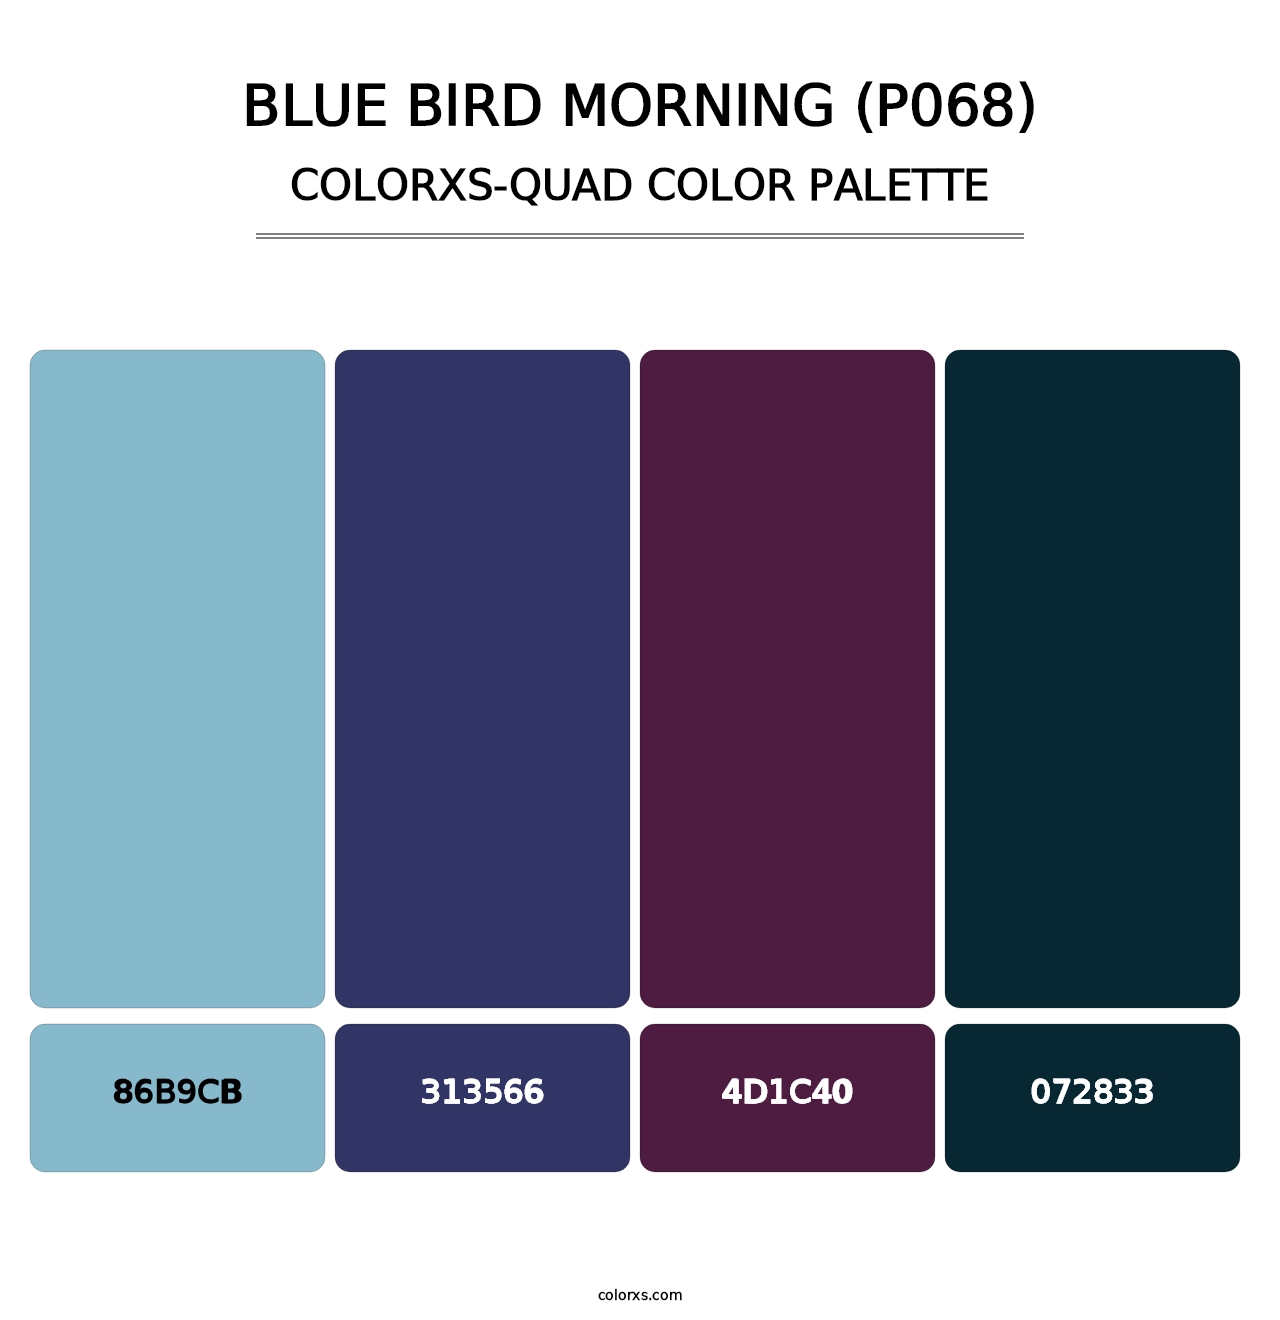 Blue Bird Morning (P068) - Colorxs Quad Palette